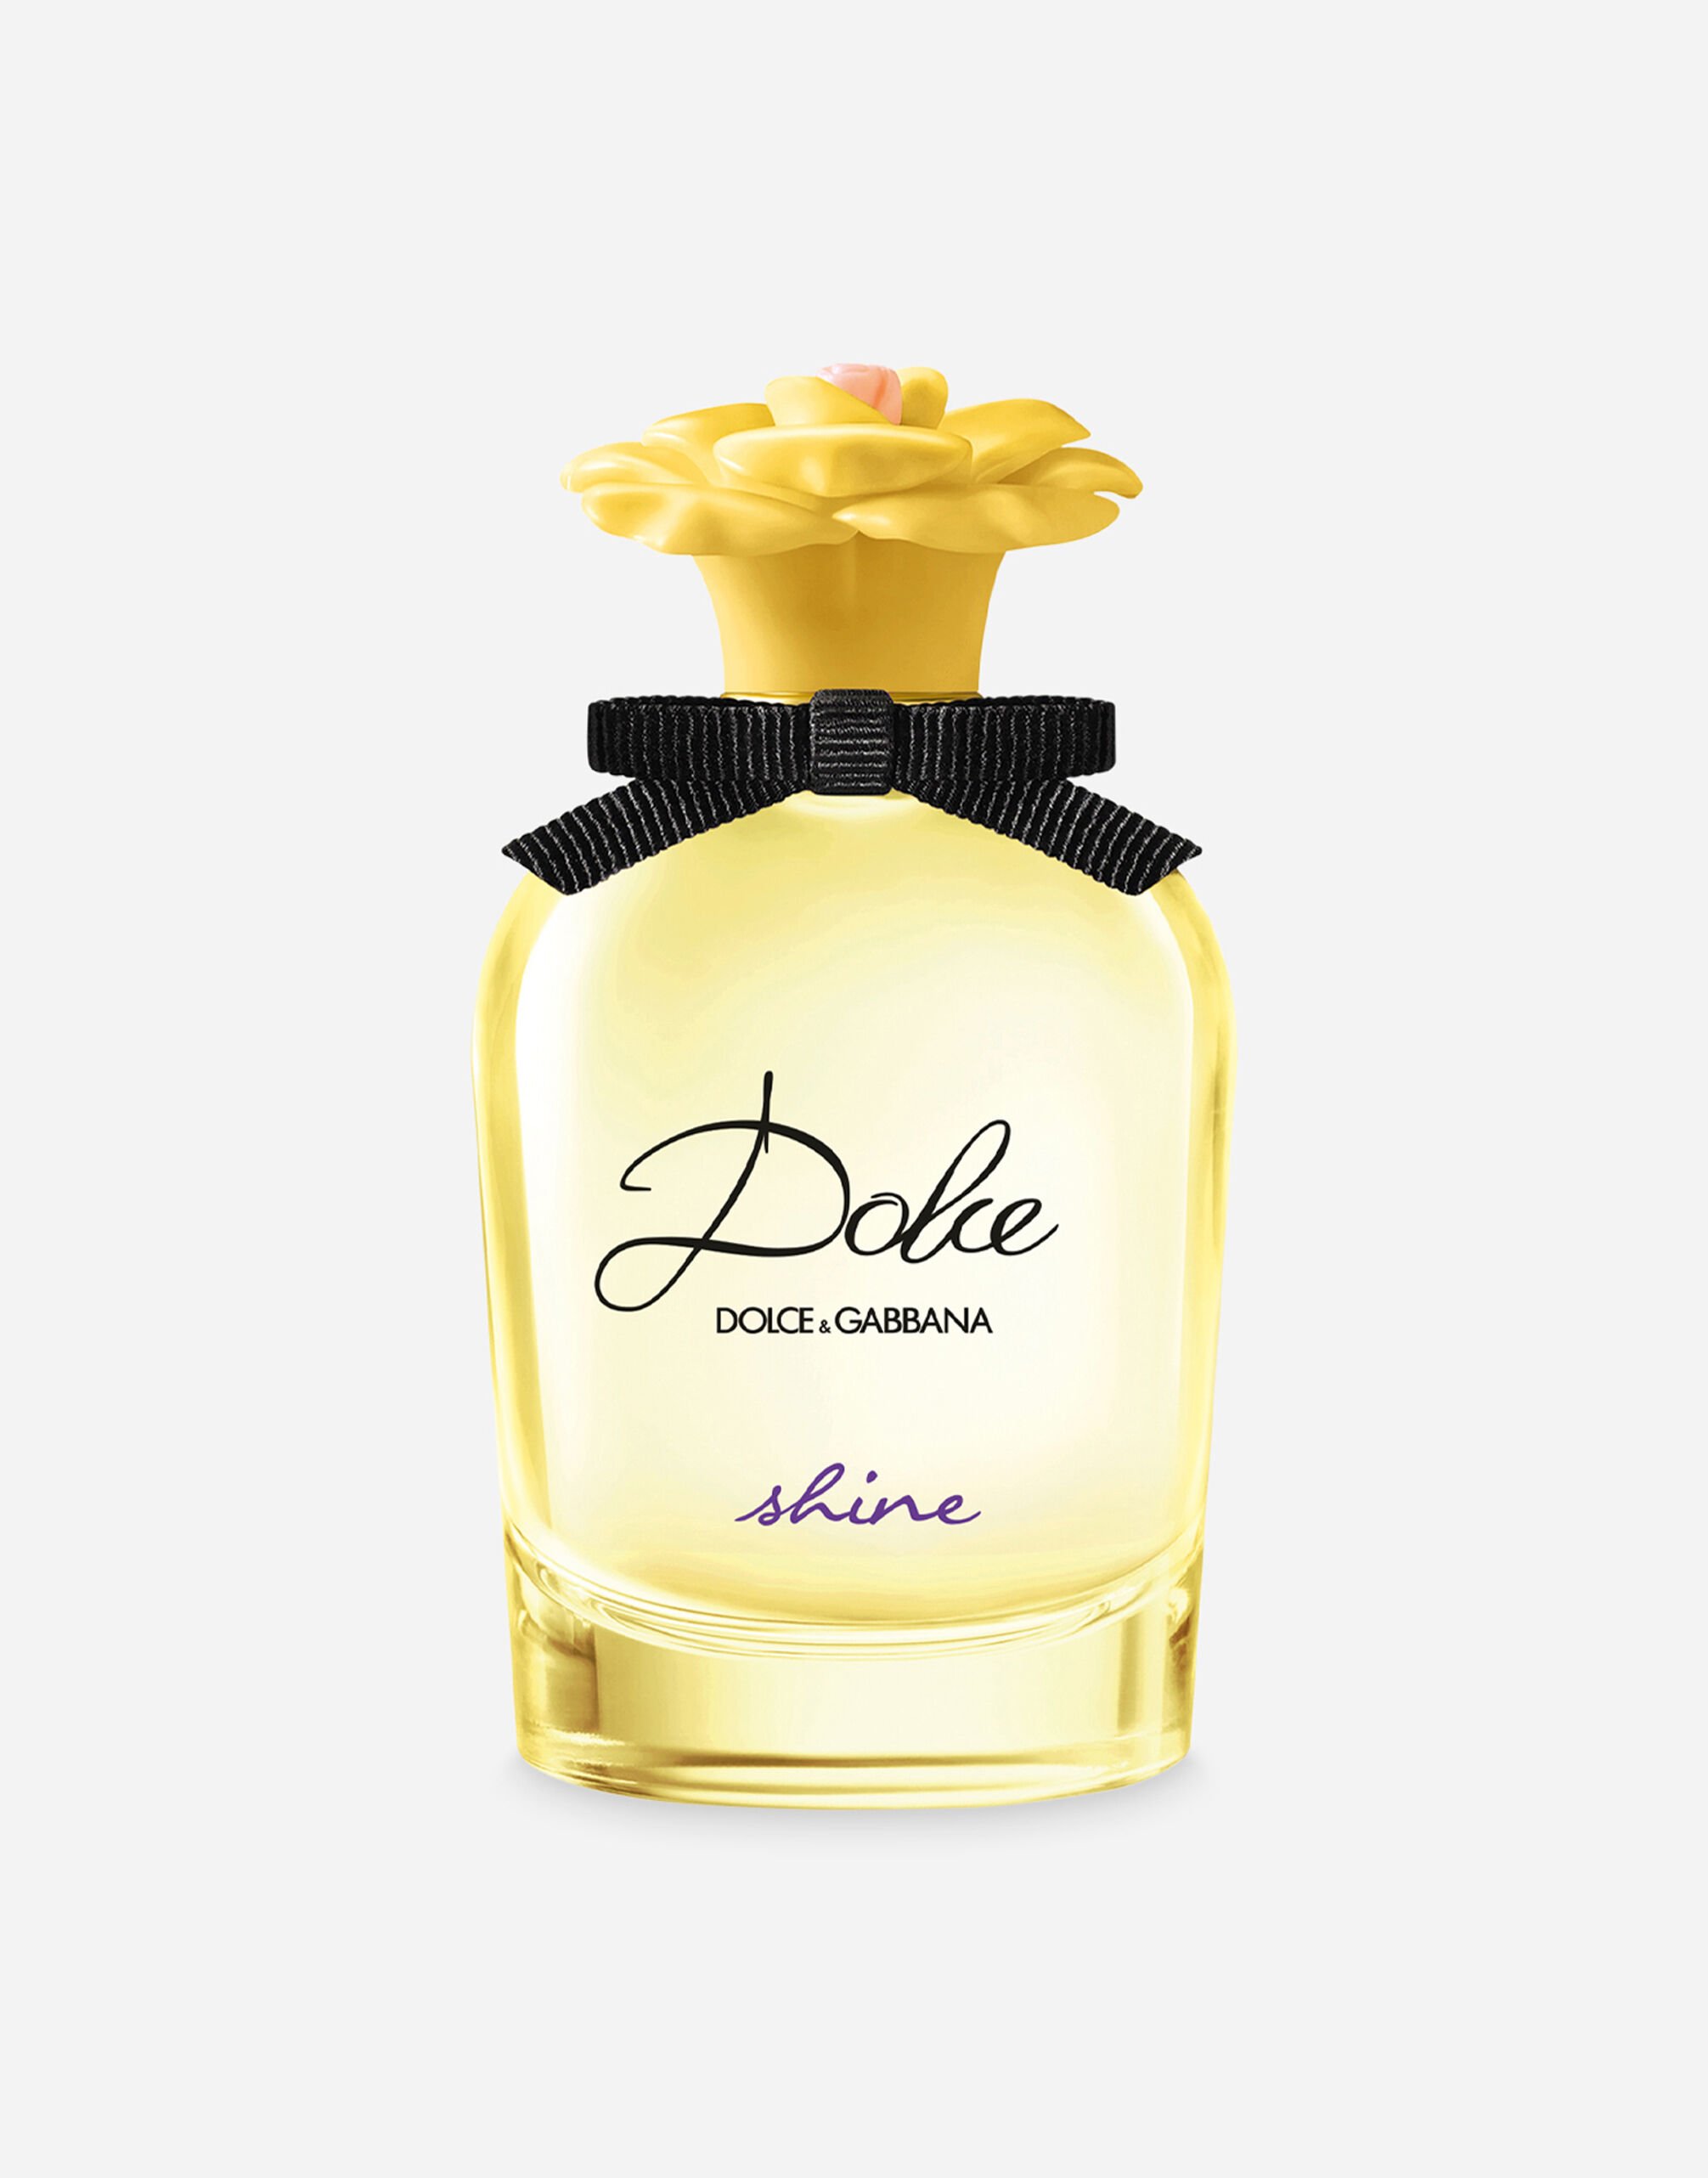 Dolce & Gabbana Dolce Shine Eau de Parfum - VP6974VP243